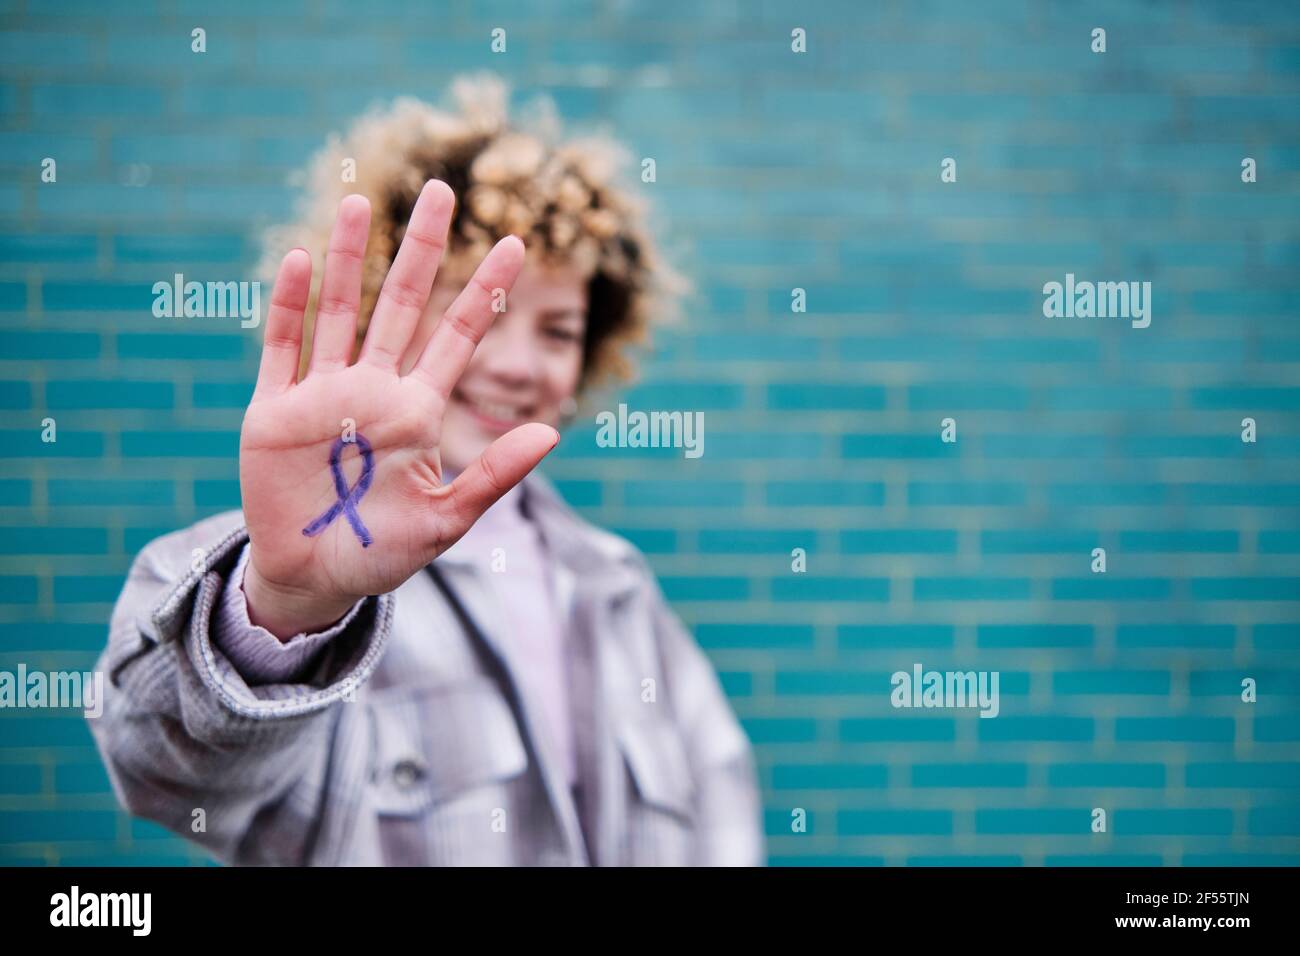 Femme montrant un signe sur la paume de la main Banque D'Images